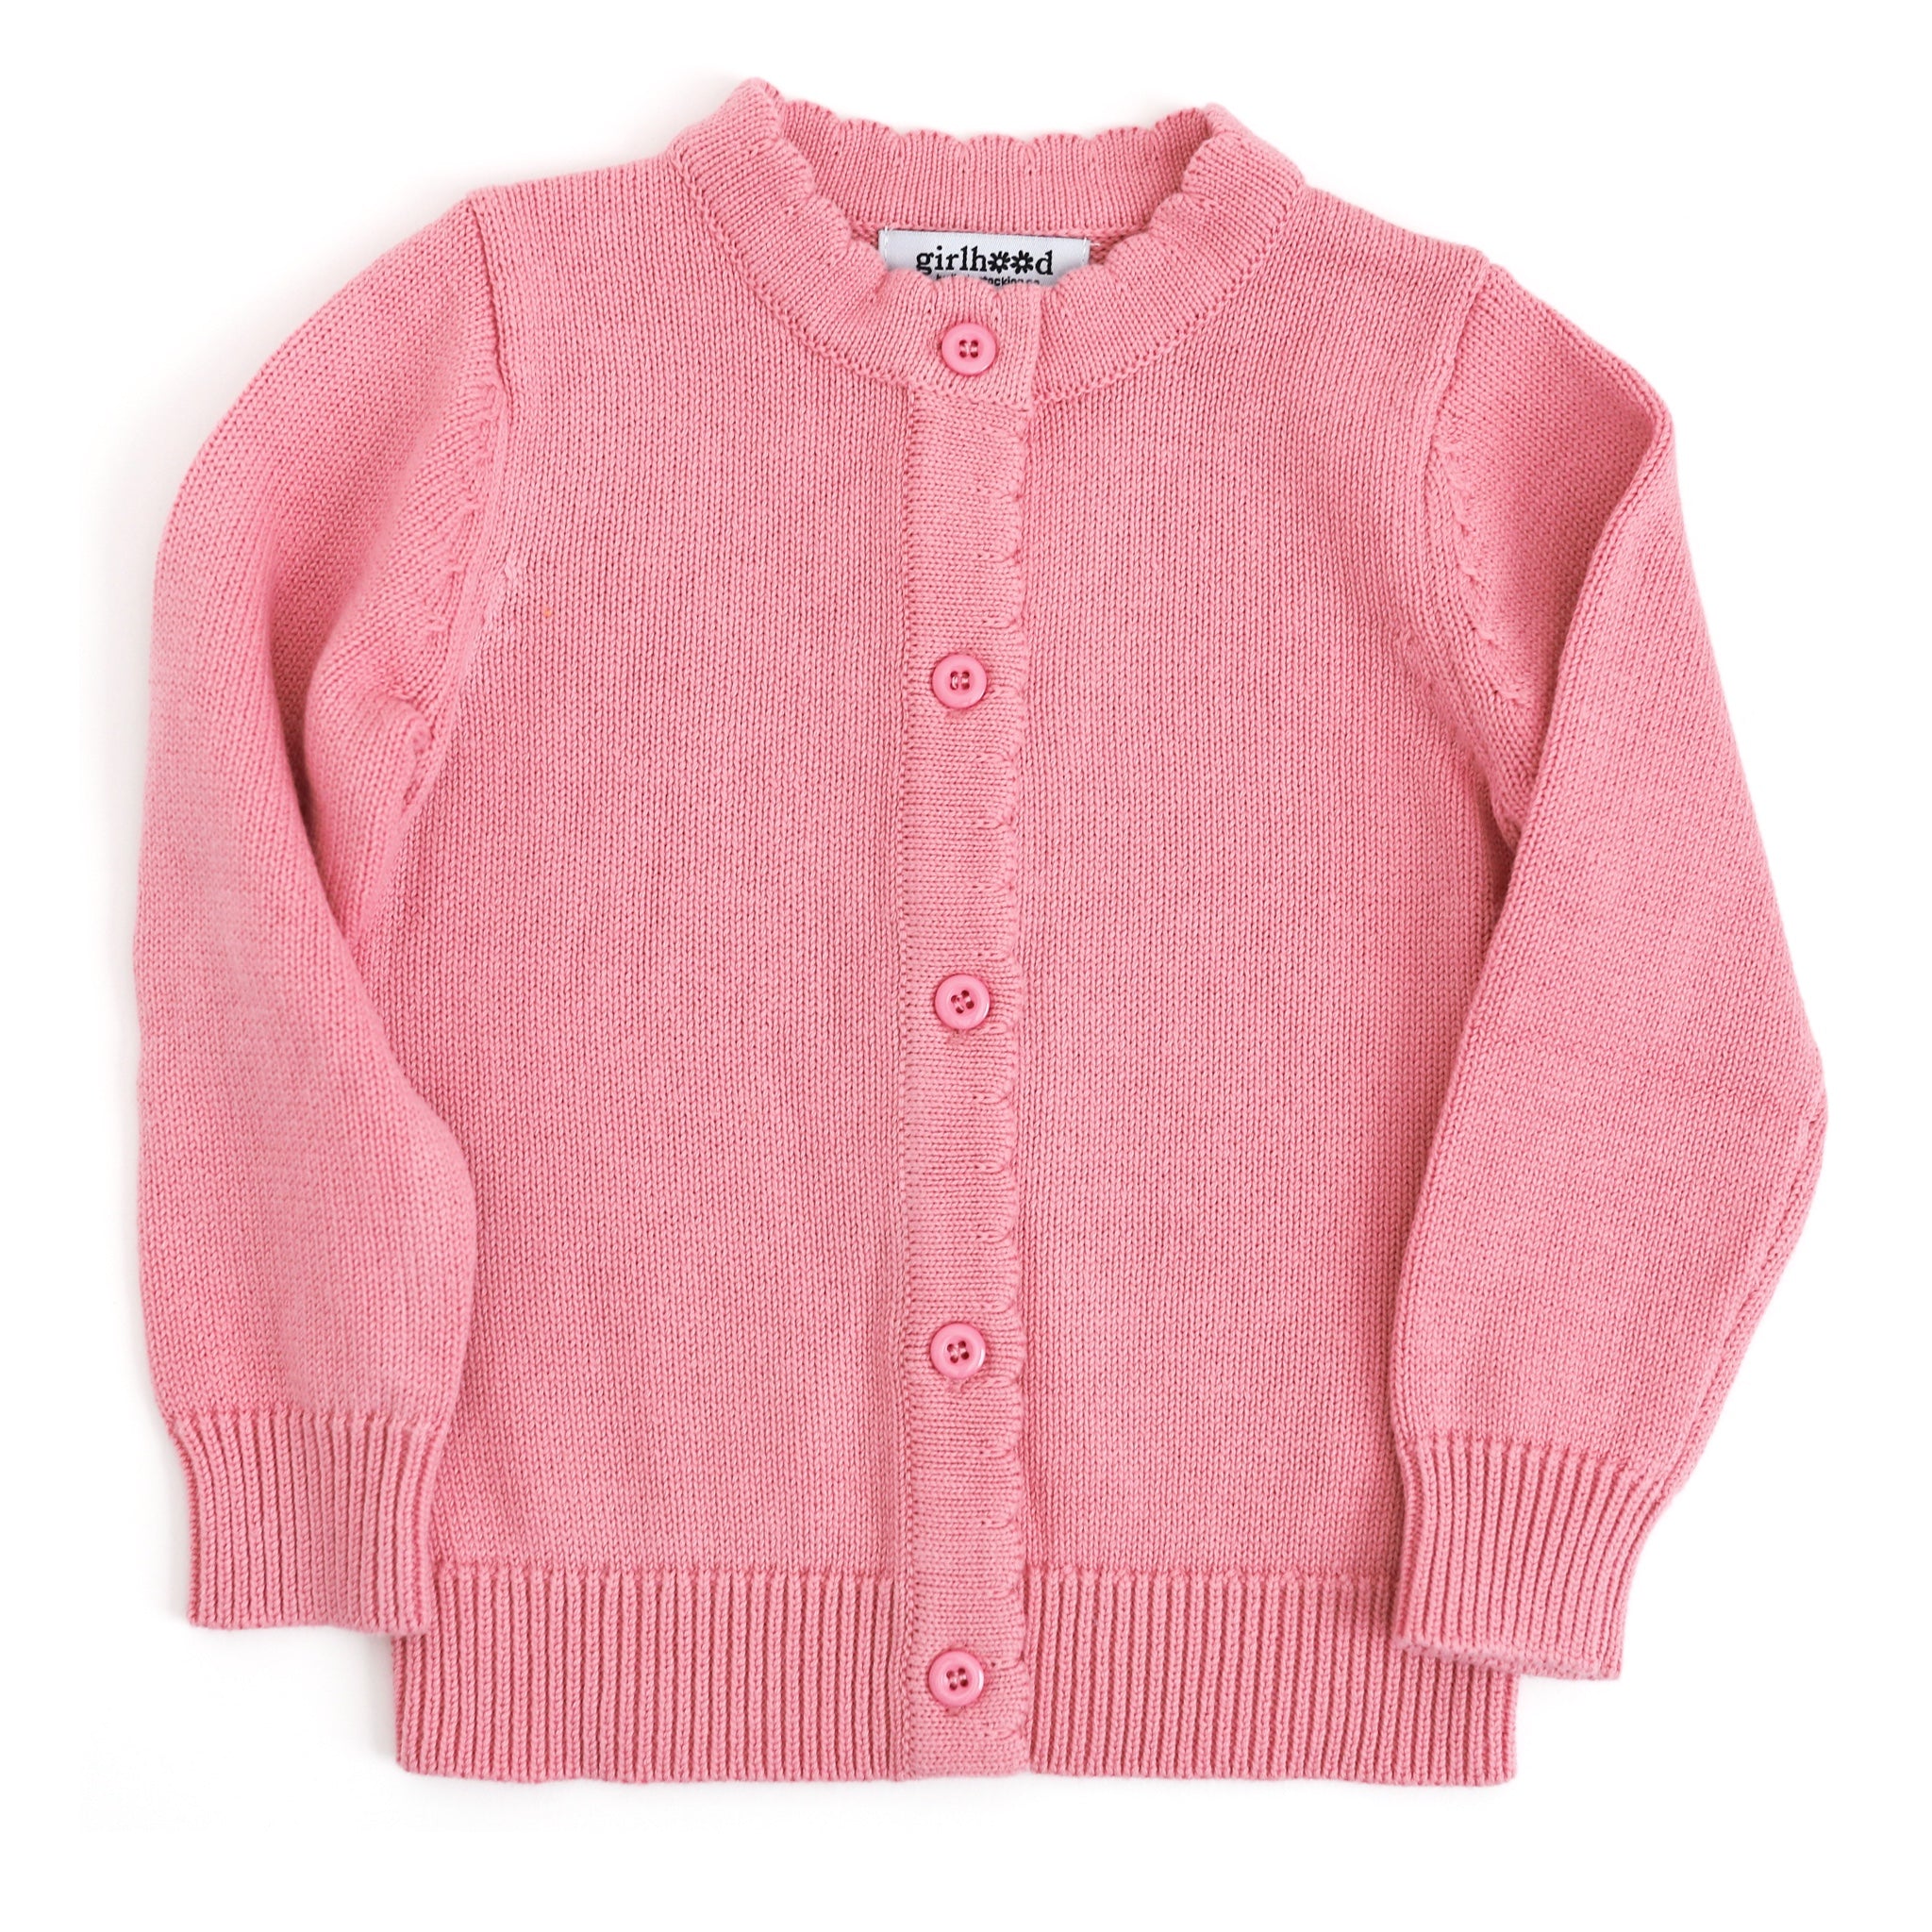 girls' pink cotton cardigan sweater